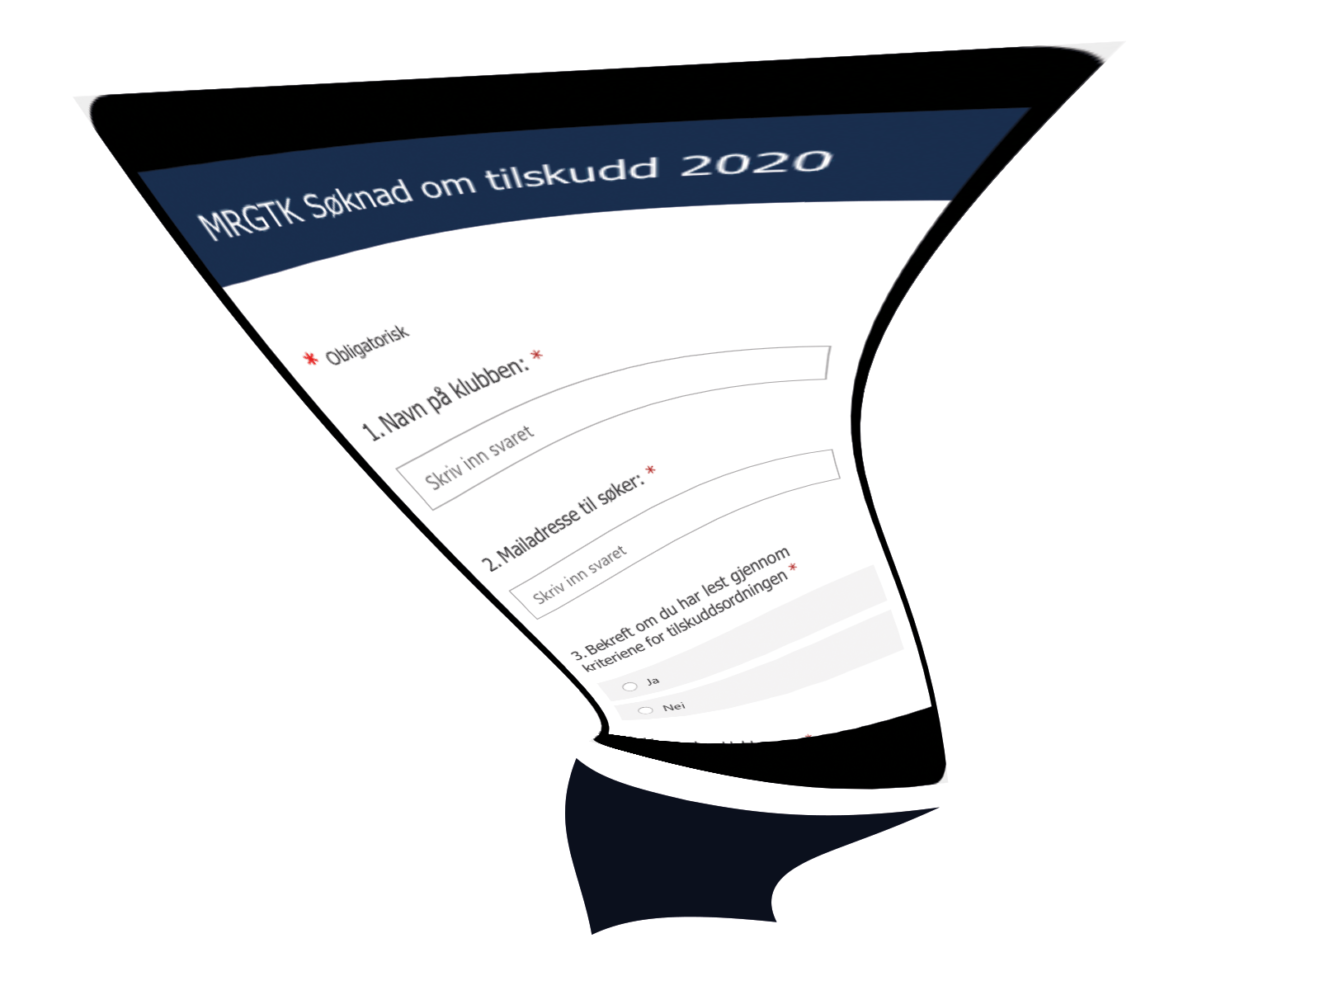 MRGTK Søknad om tilskudd 2020